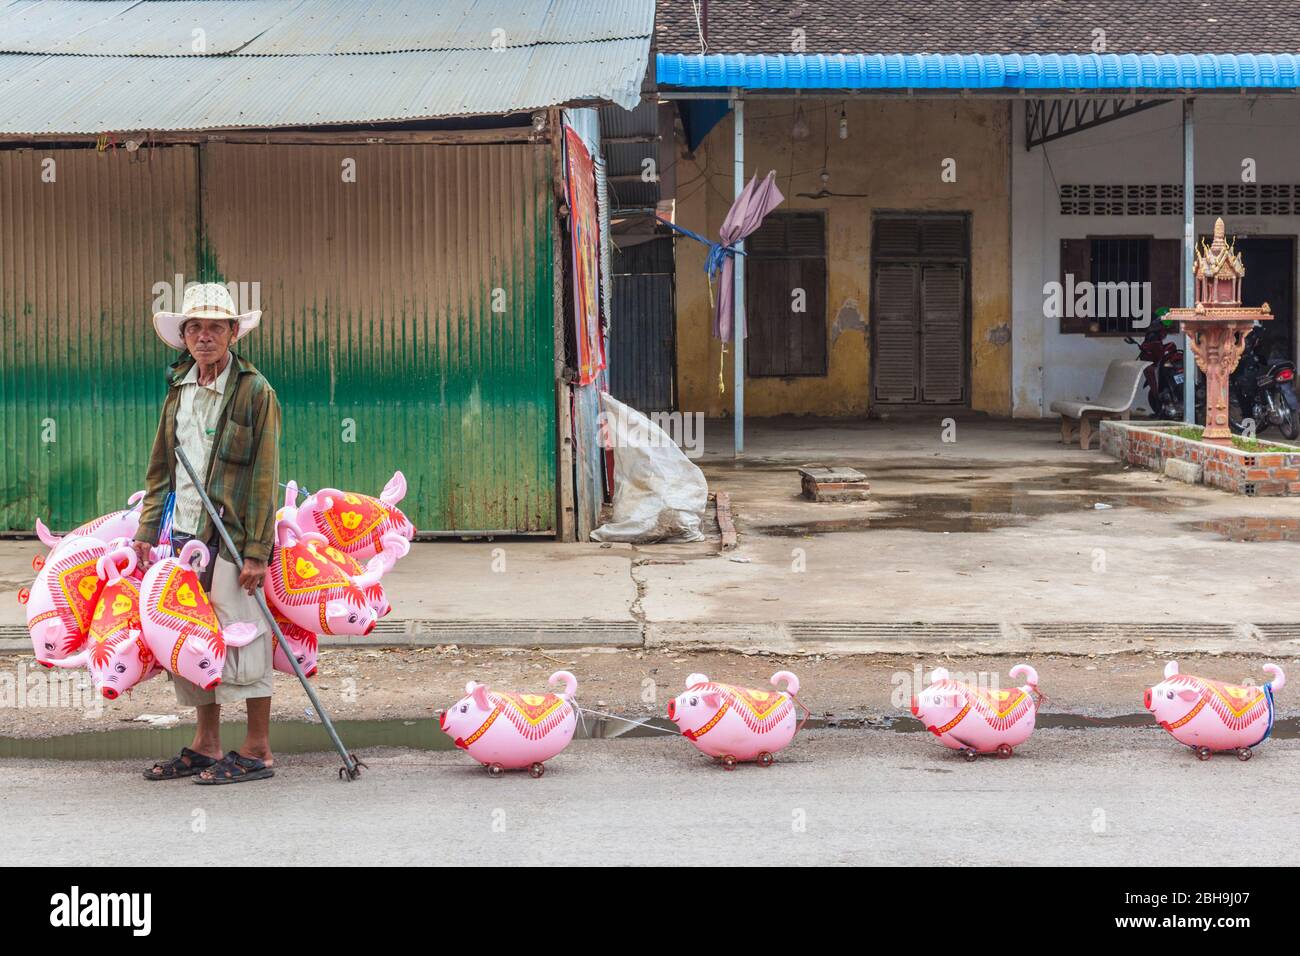 Camboya, Battambang, vendedor con juguetes de tiro en forma de cerdo, sin emisiones Foto de stock